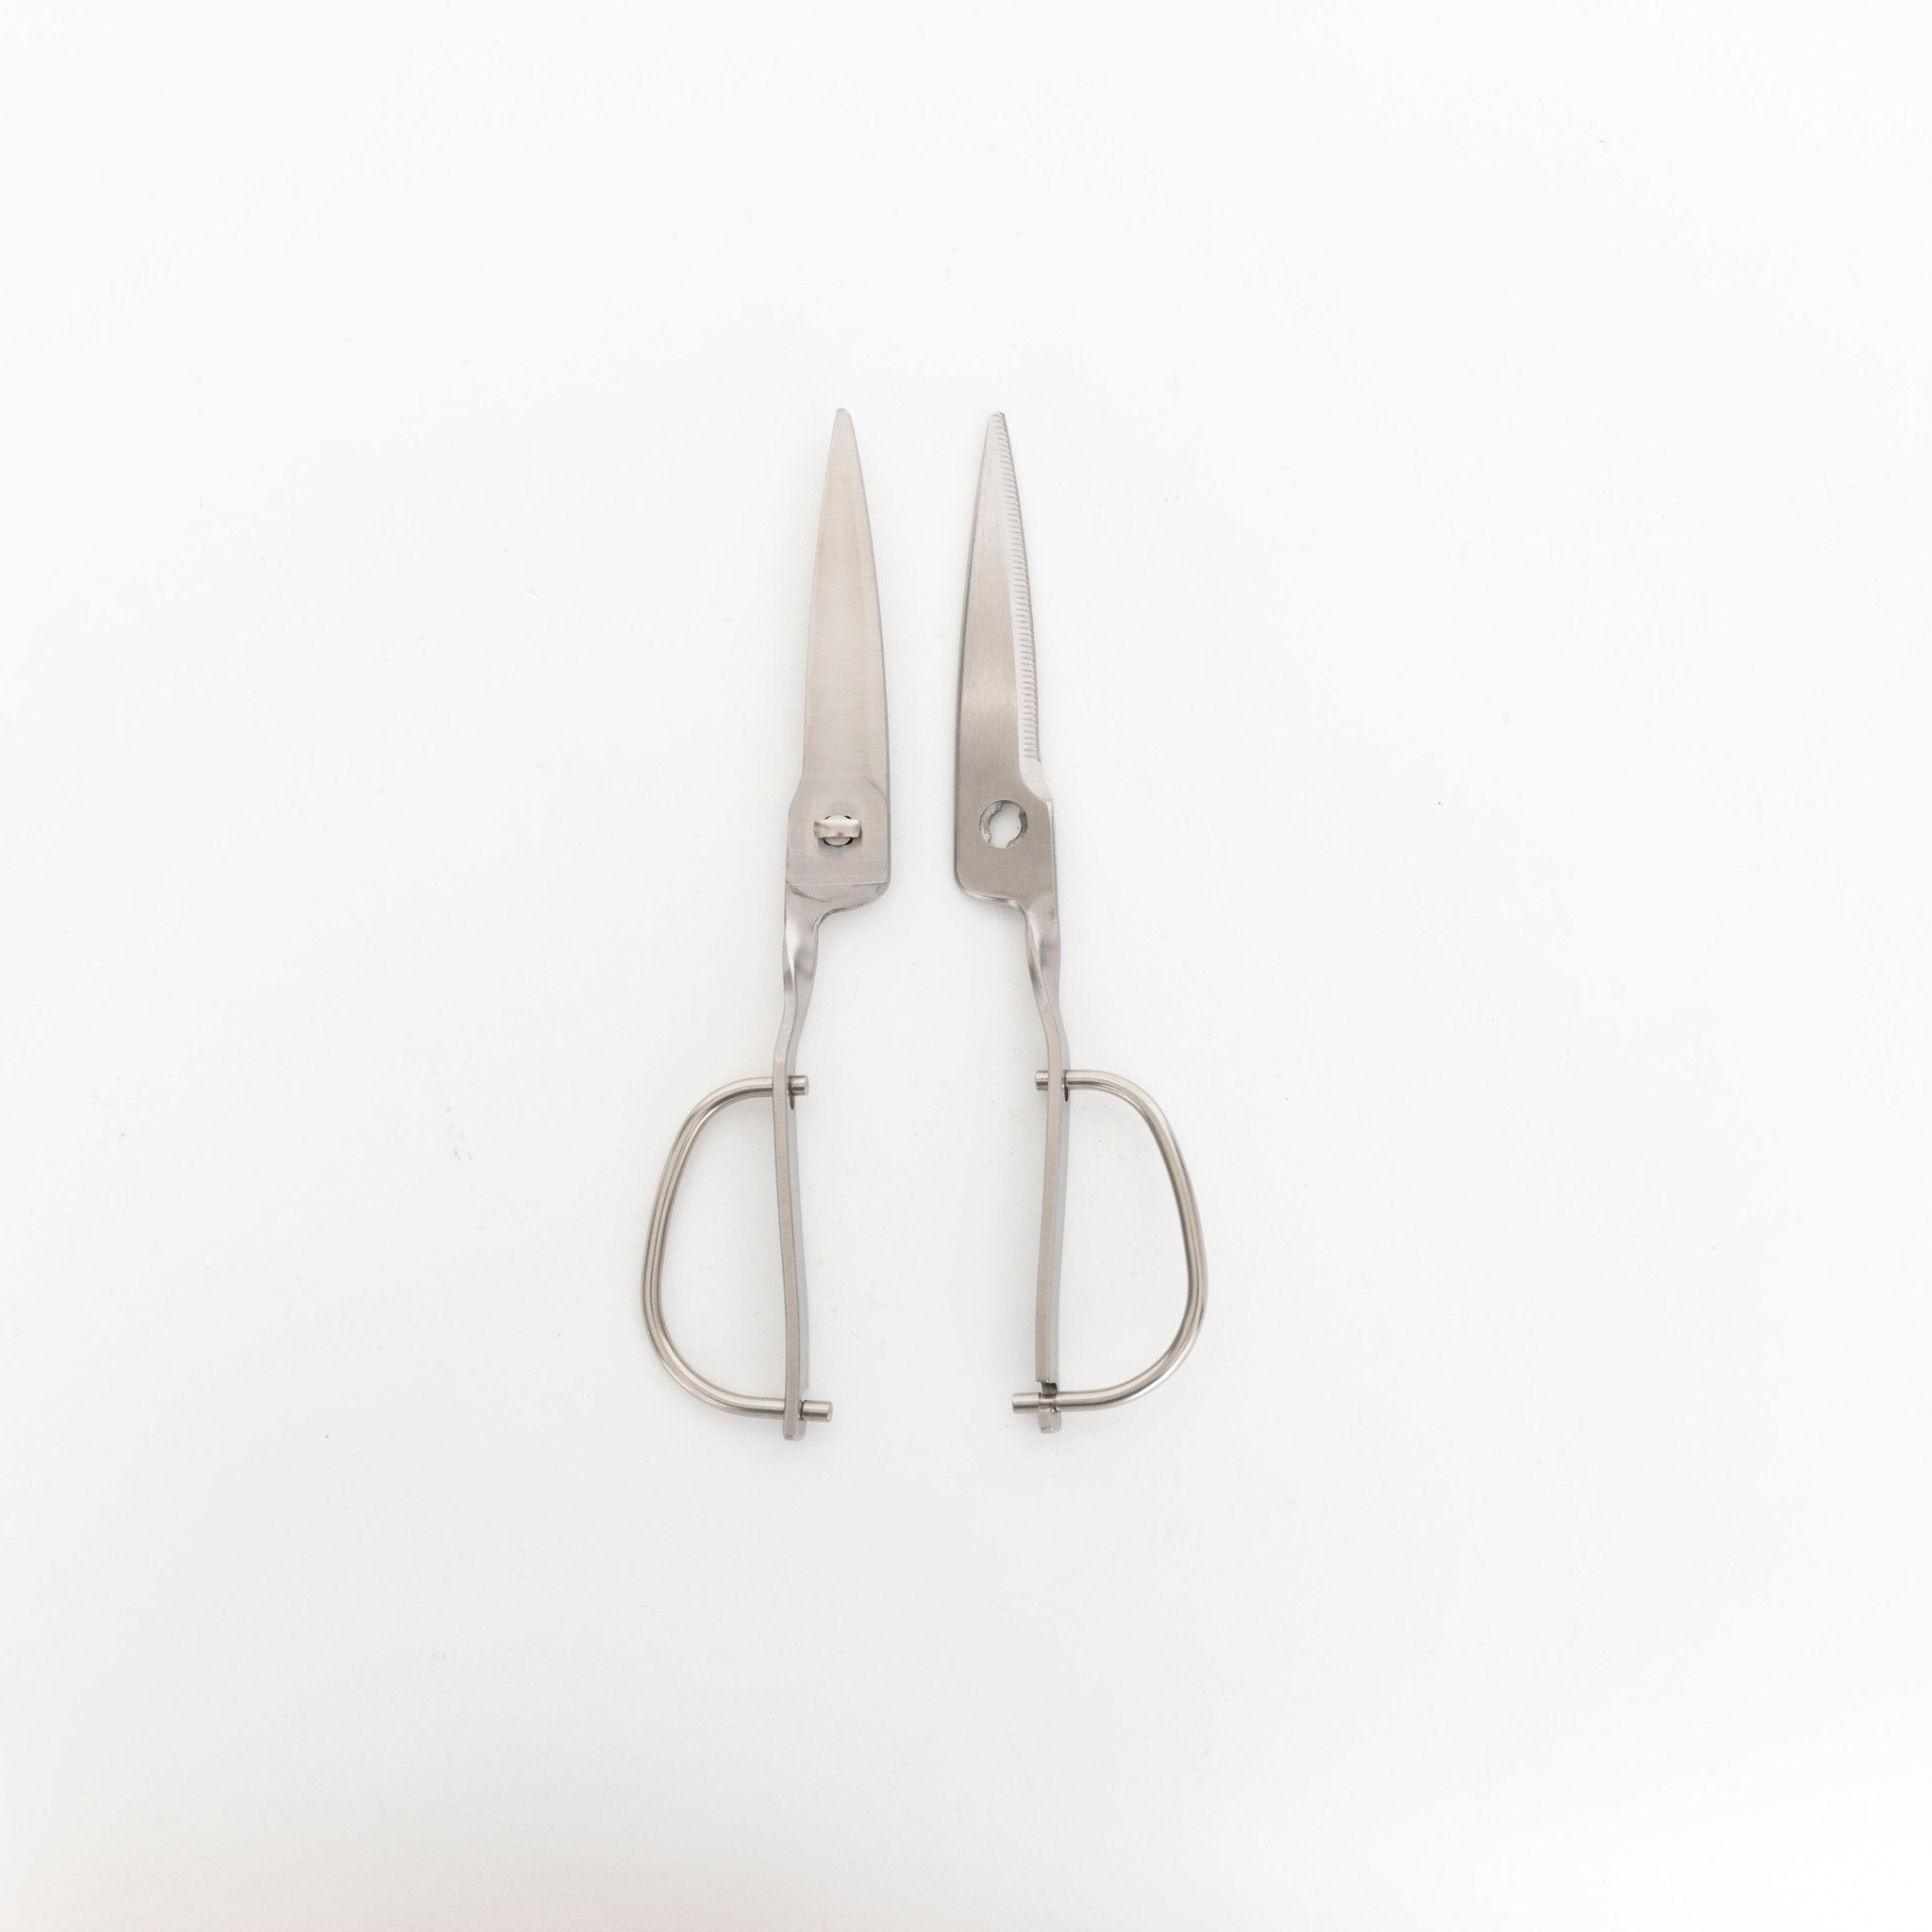 Japanese TORIBE kitchen scissors stainless KS-203 ciseaux cuisine  Küchenschere